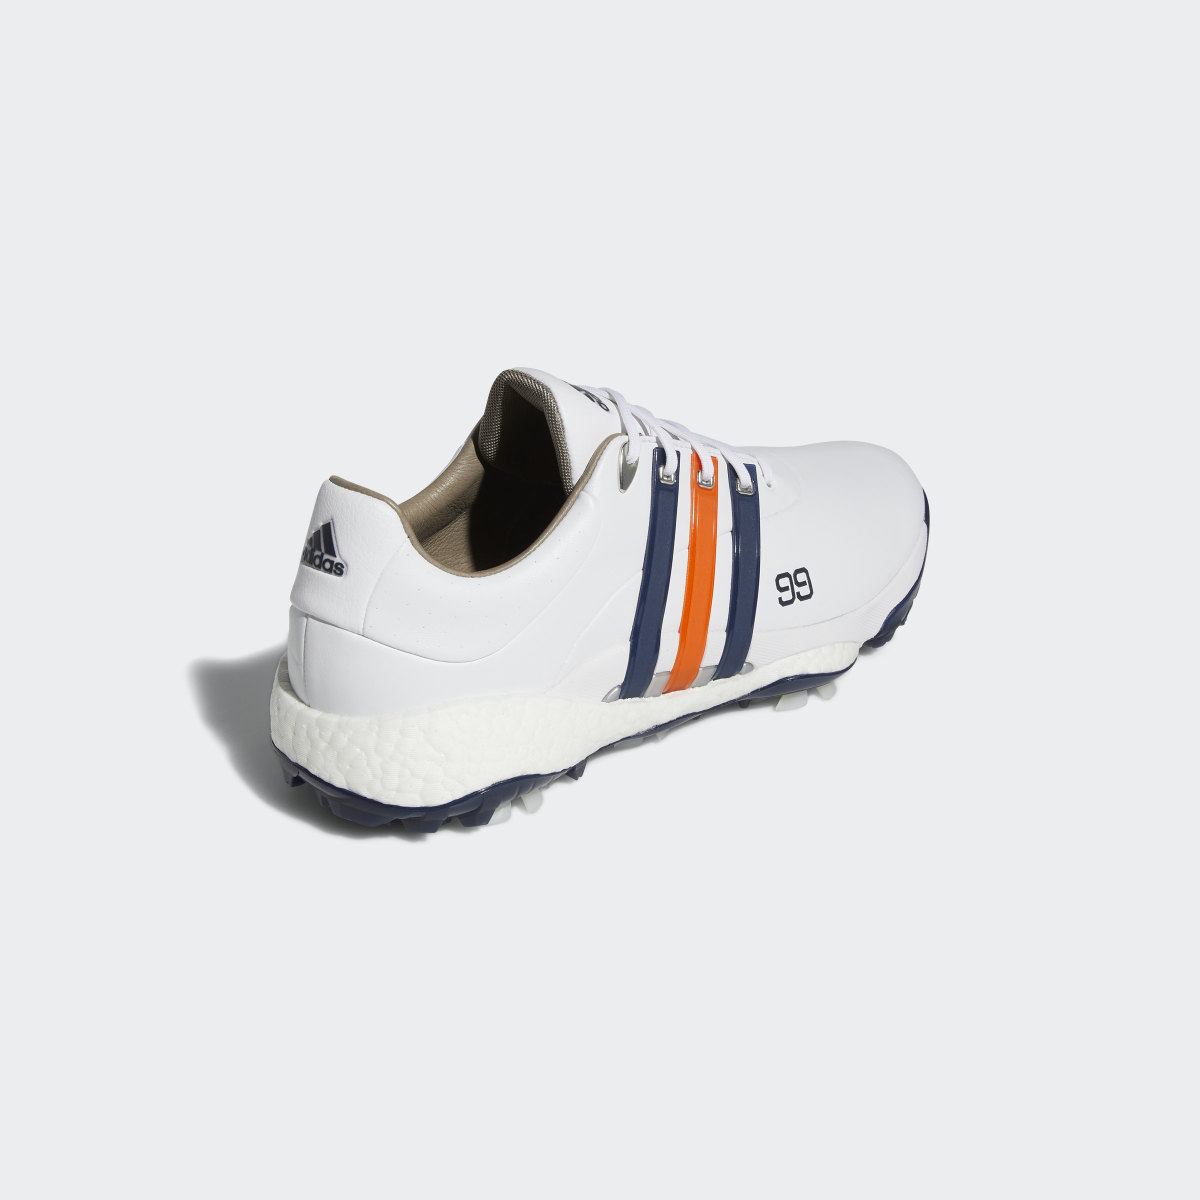 Adidas DJ Gretzky Tour360 22 Golf Shoes. 12